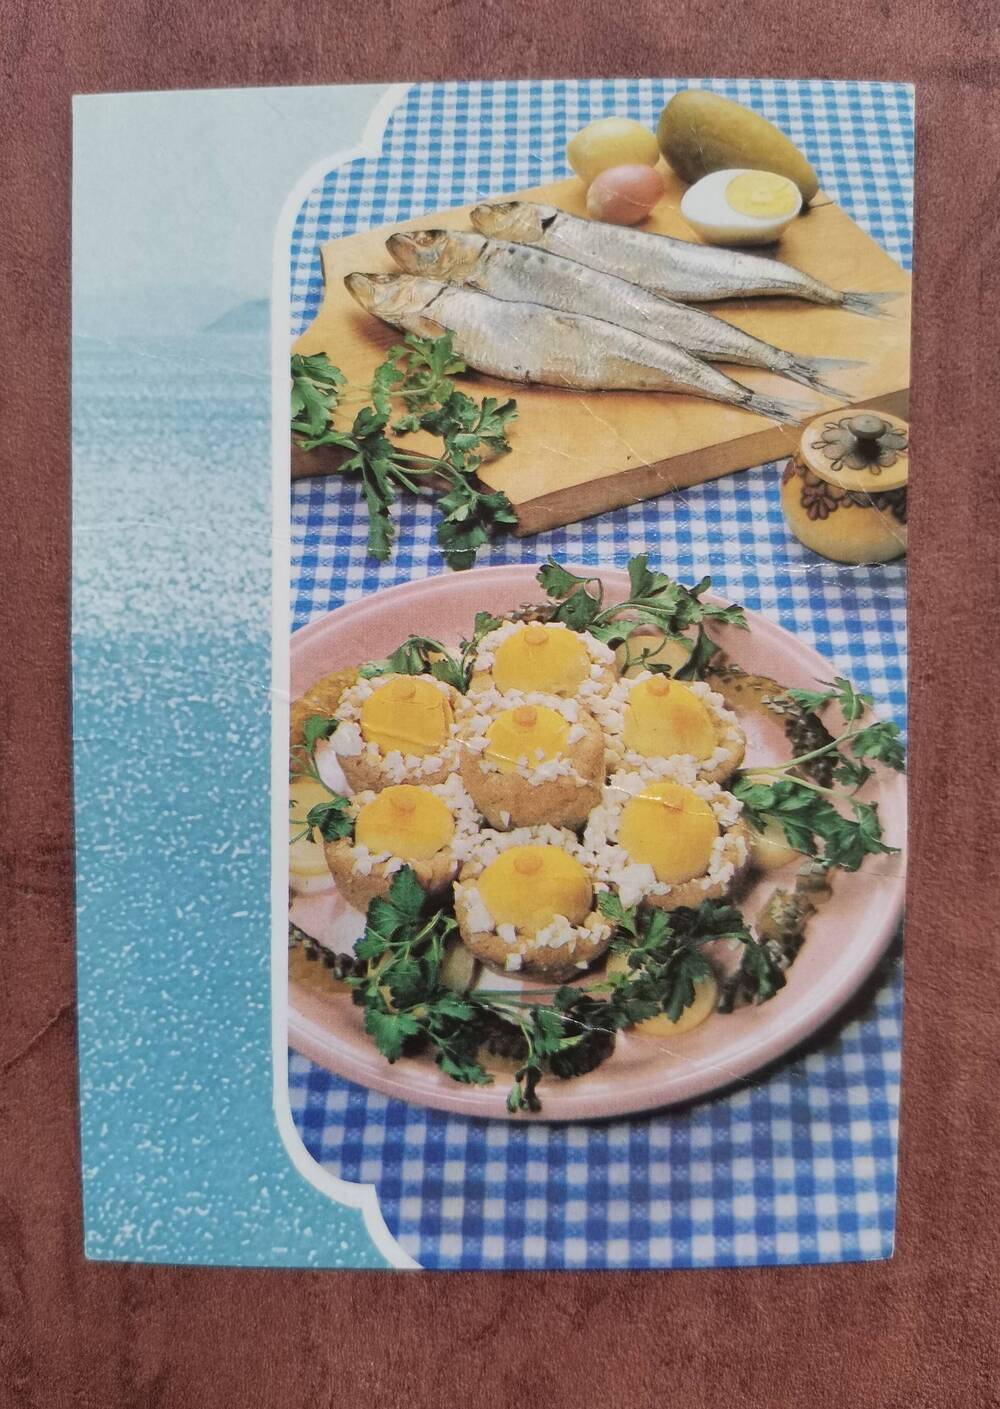 Открытка «Птичьи гнезда» из сельди иваси». Из комплекта открыток «Советы хозяйкам. Блюда из рыбы».